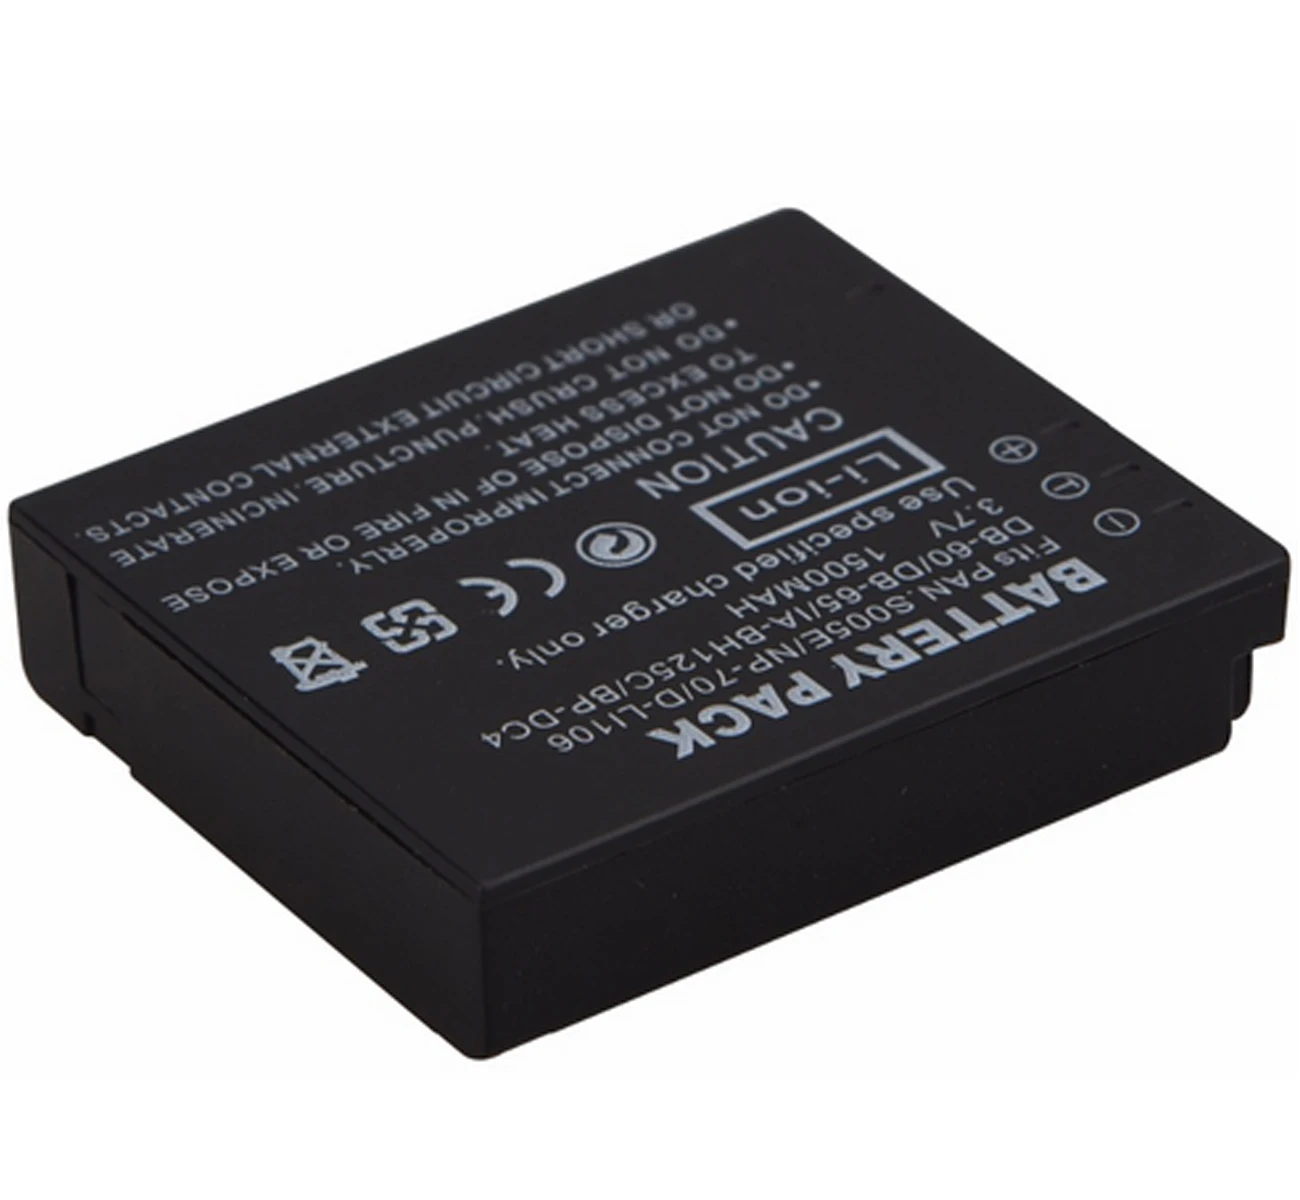 MICRO-USB CHARGER for Fujifilm NP-80 NP-80e NP-100 